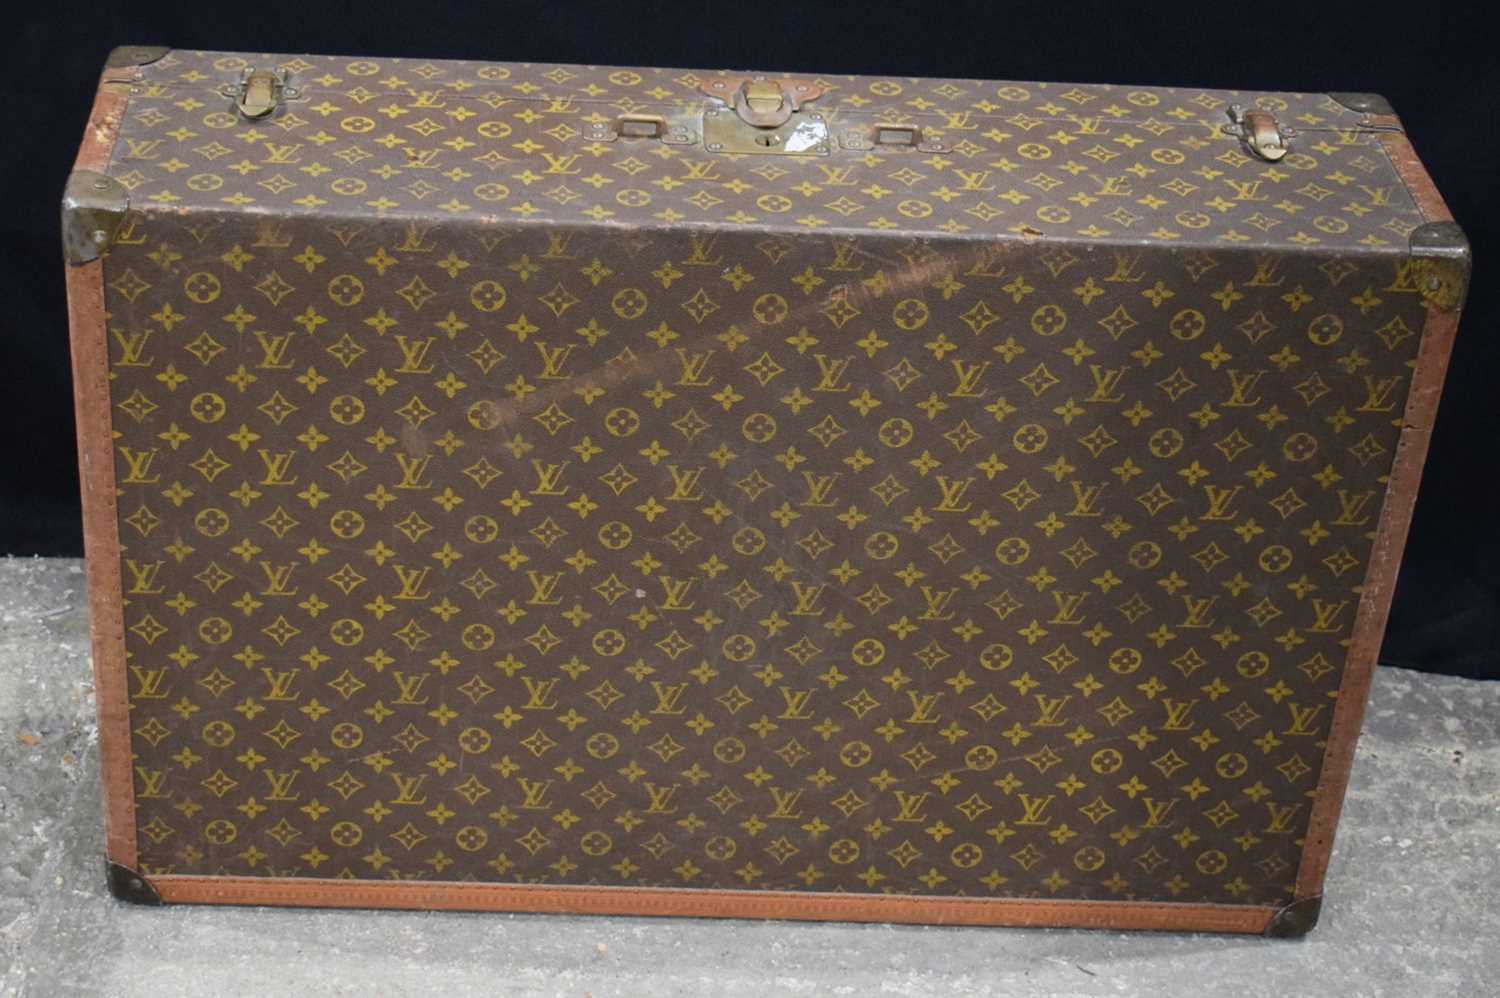 A Louis Vuitton suitcase 21 x 80 x 52 cm. - Image 5 of 10